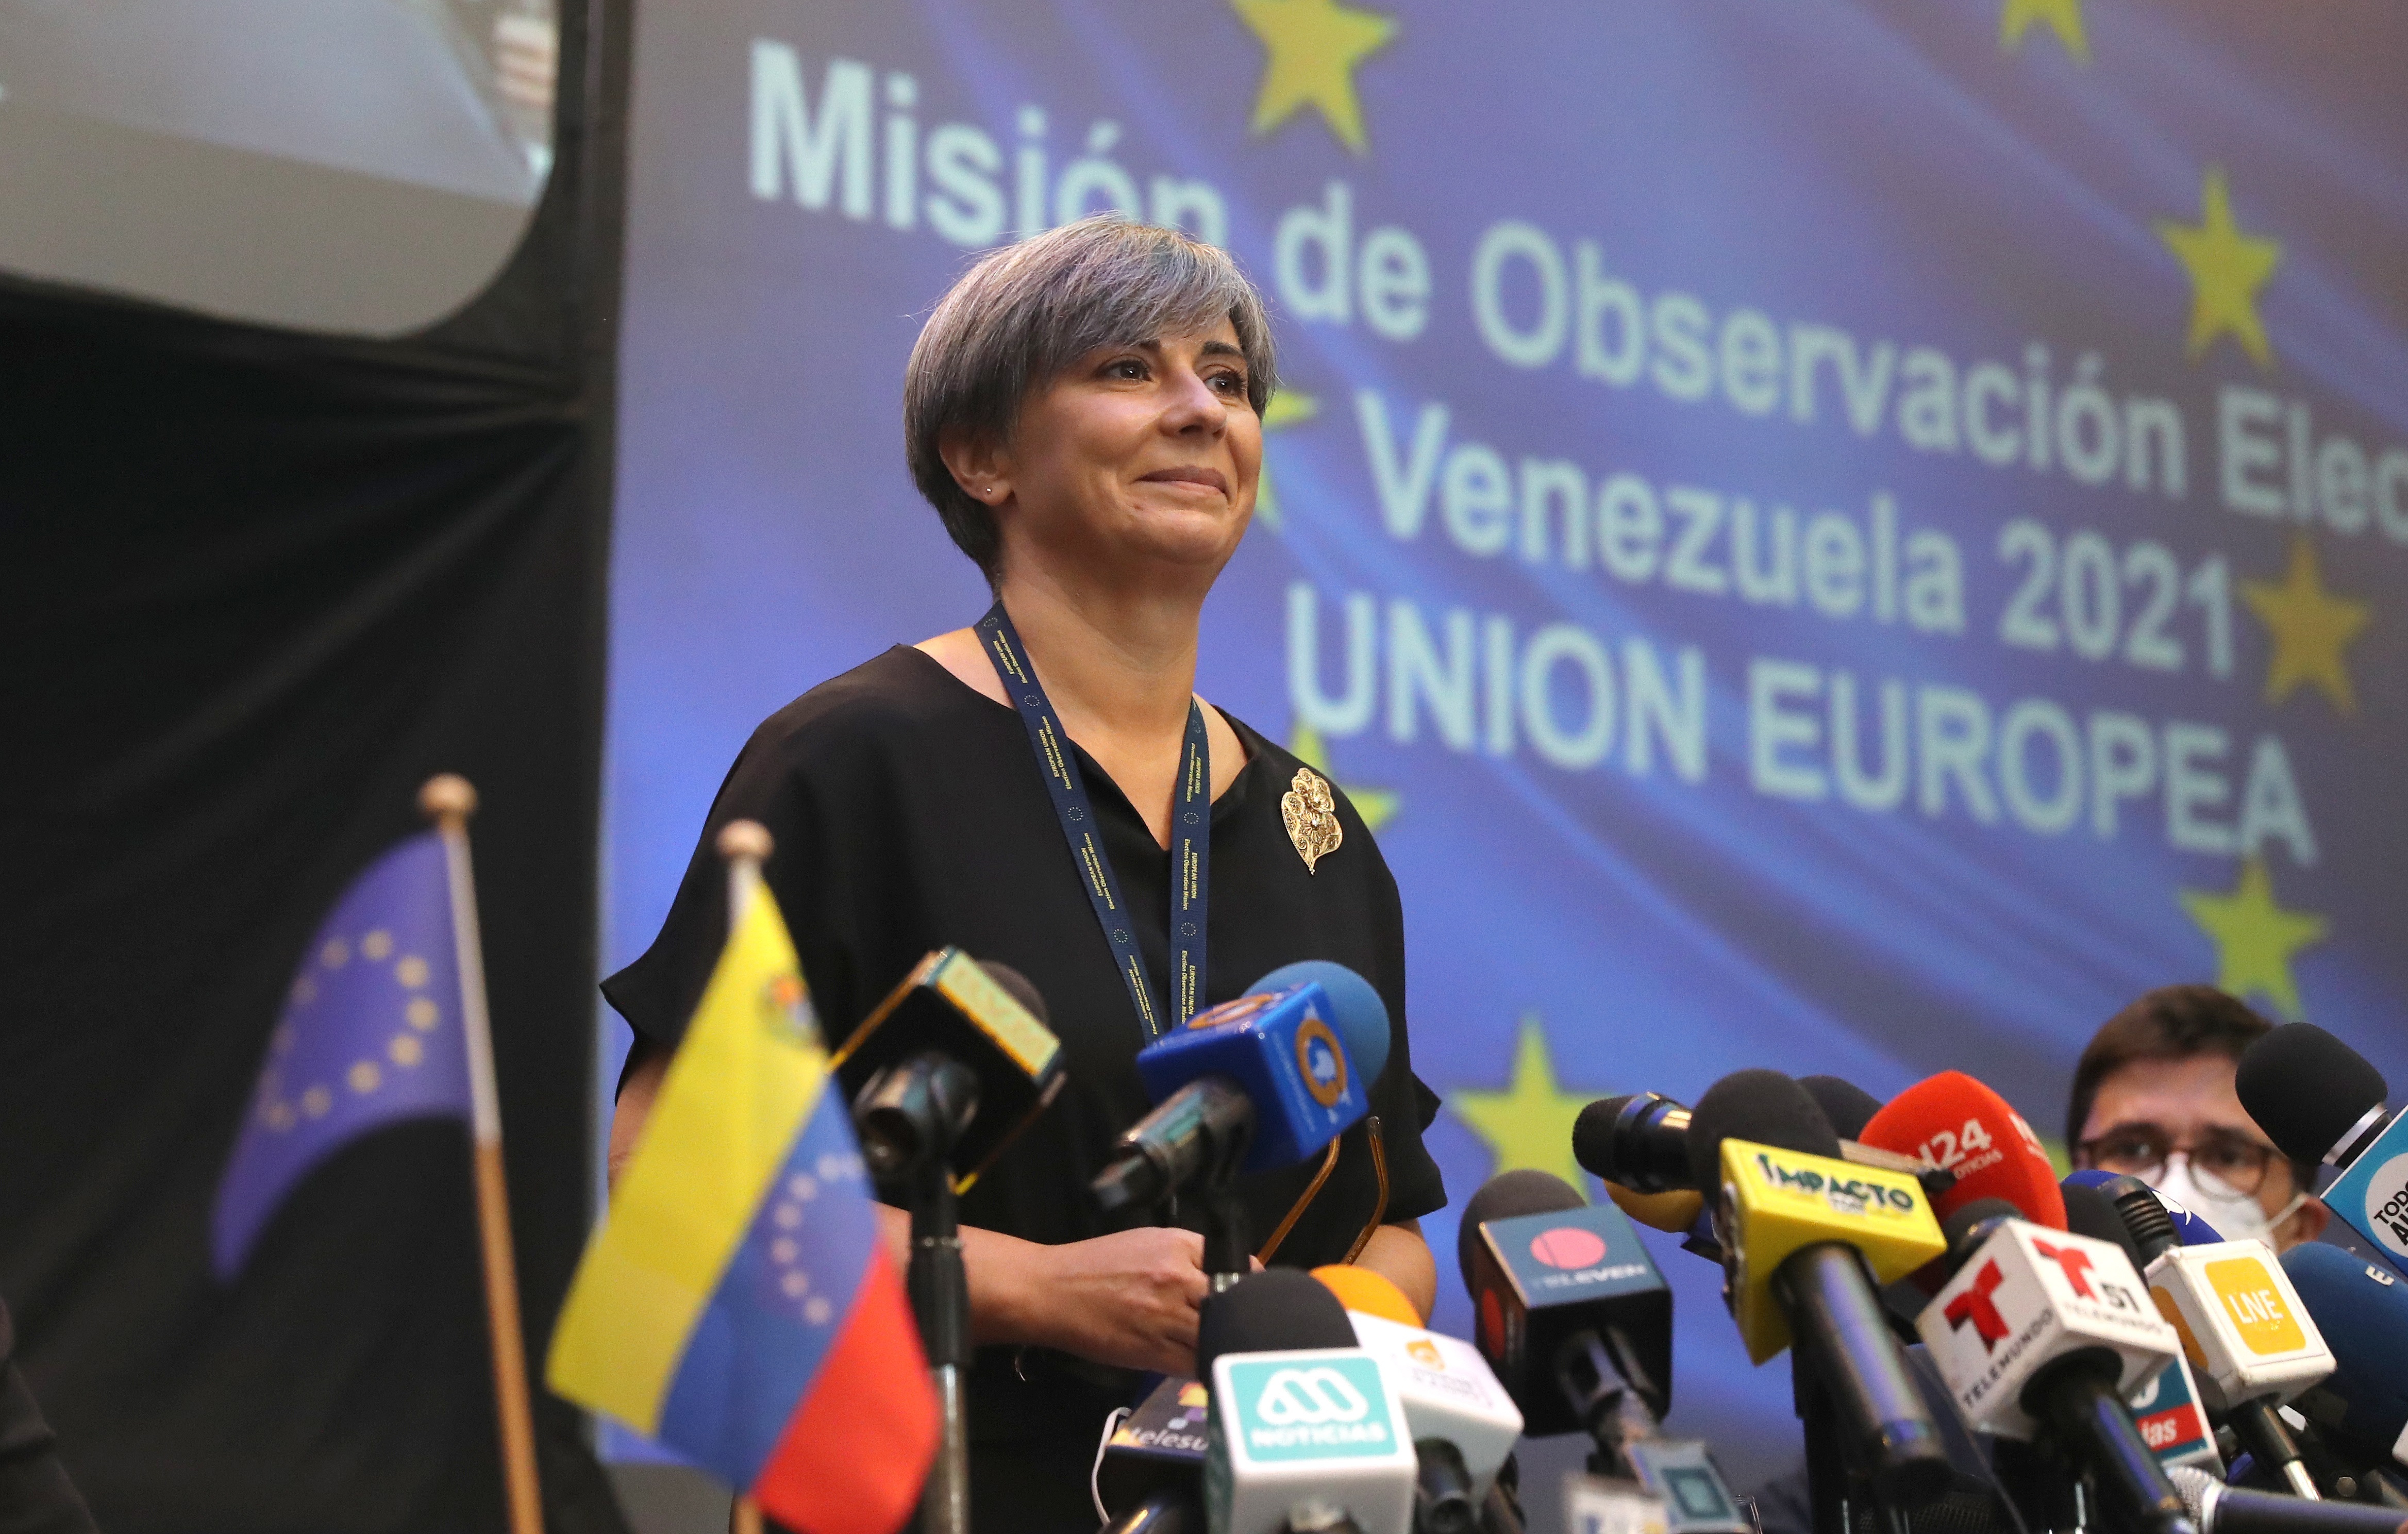 Siga EN VIVO la presentación del informe final de la Misión de Observación Electoral de la UE en Venezuela